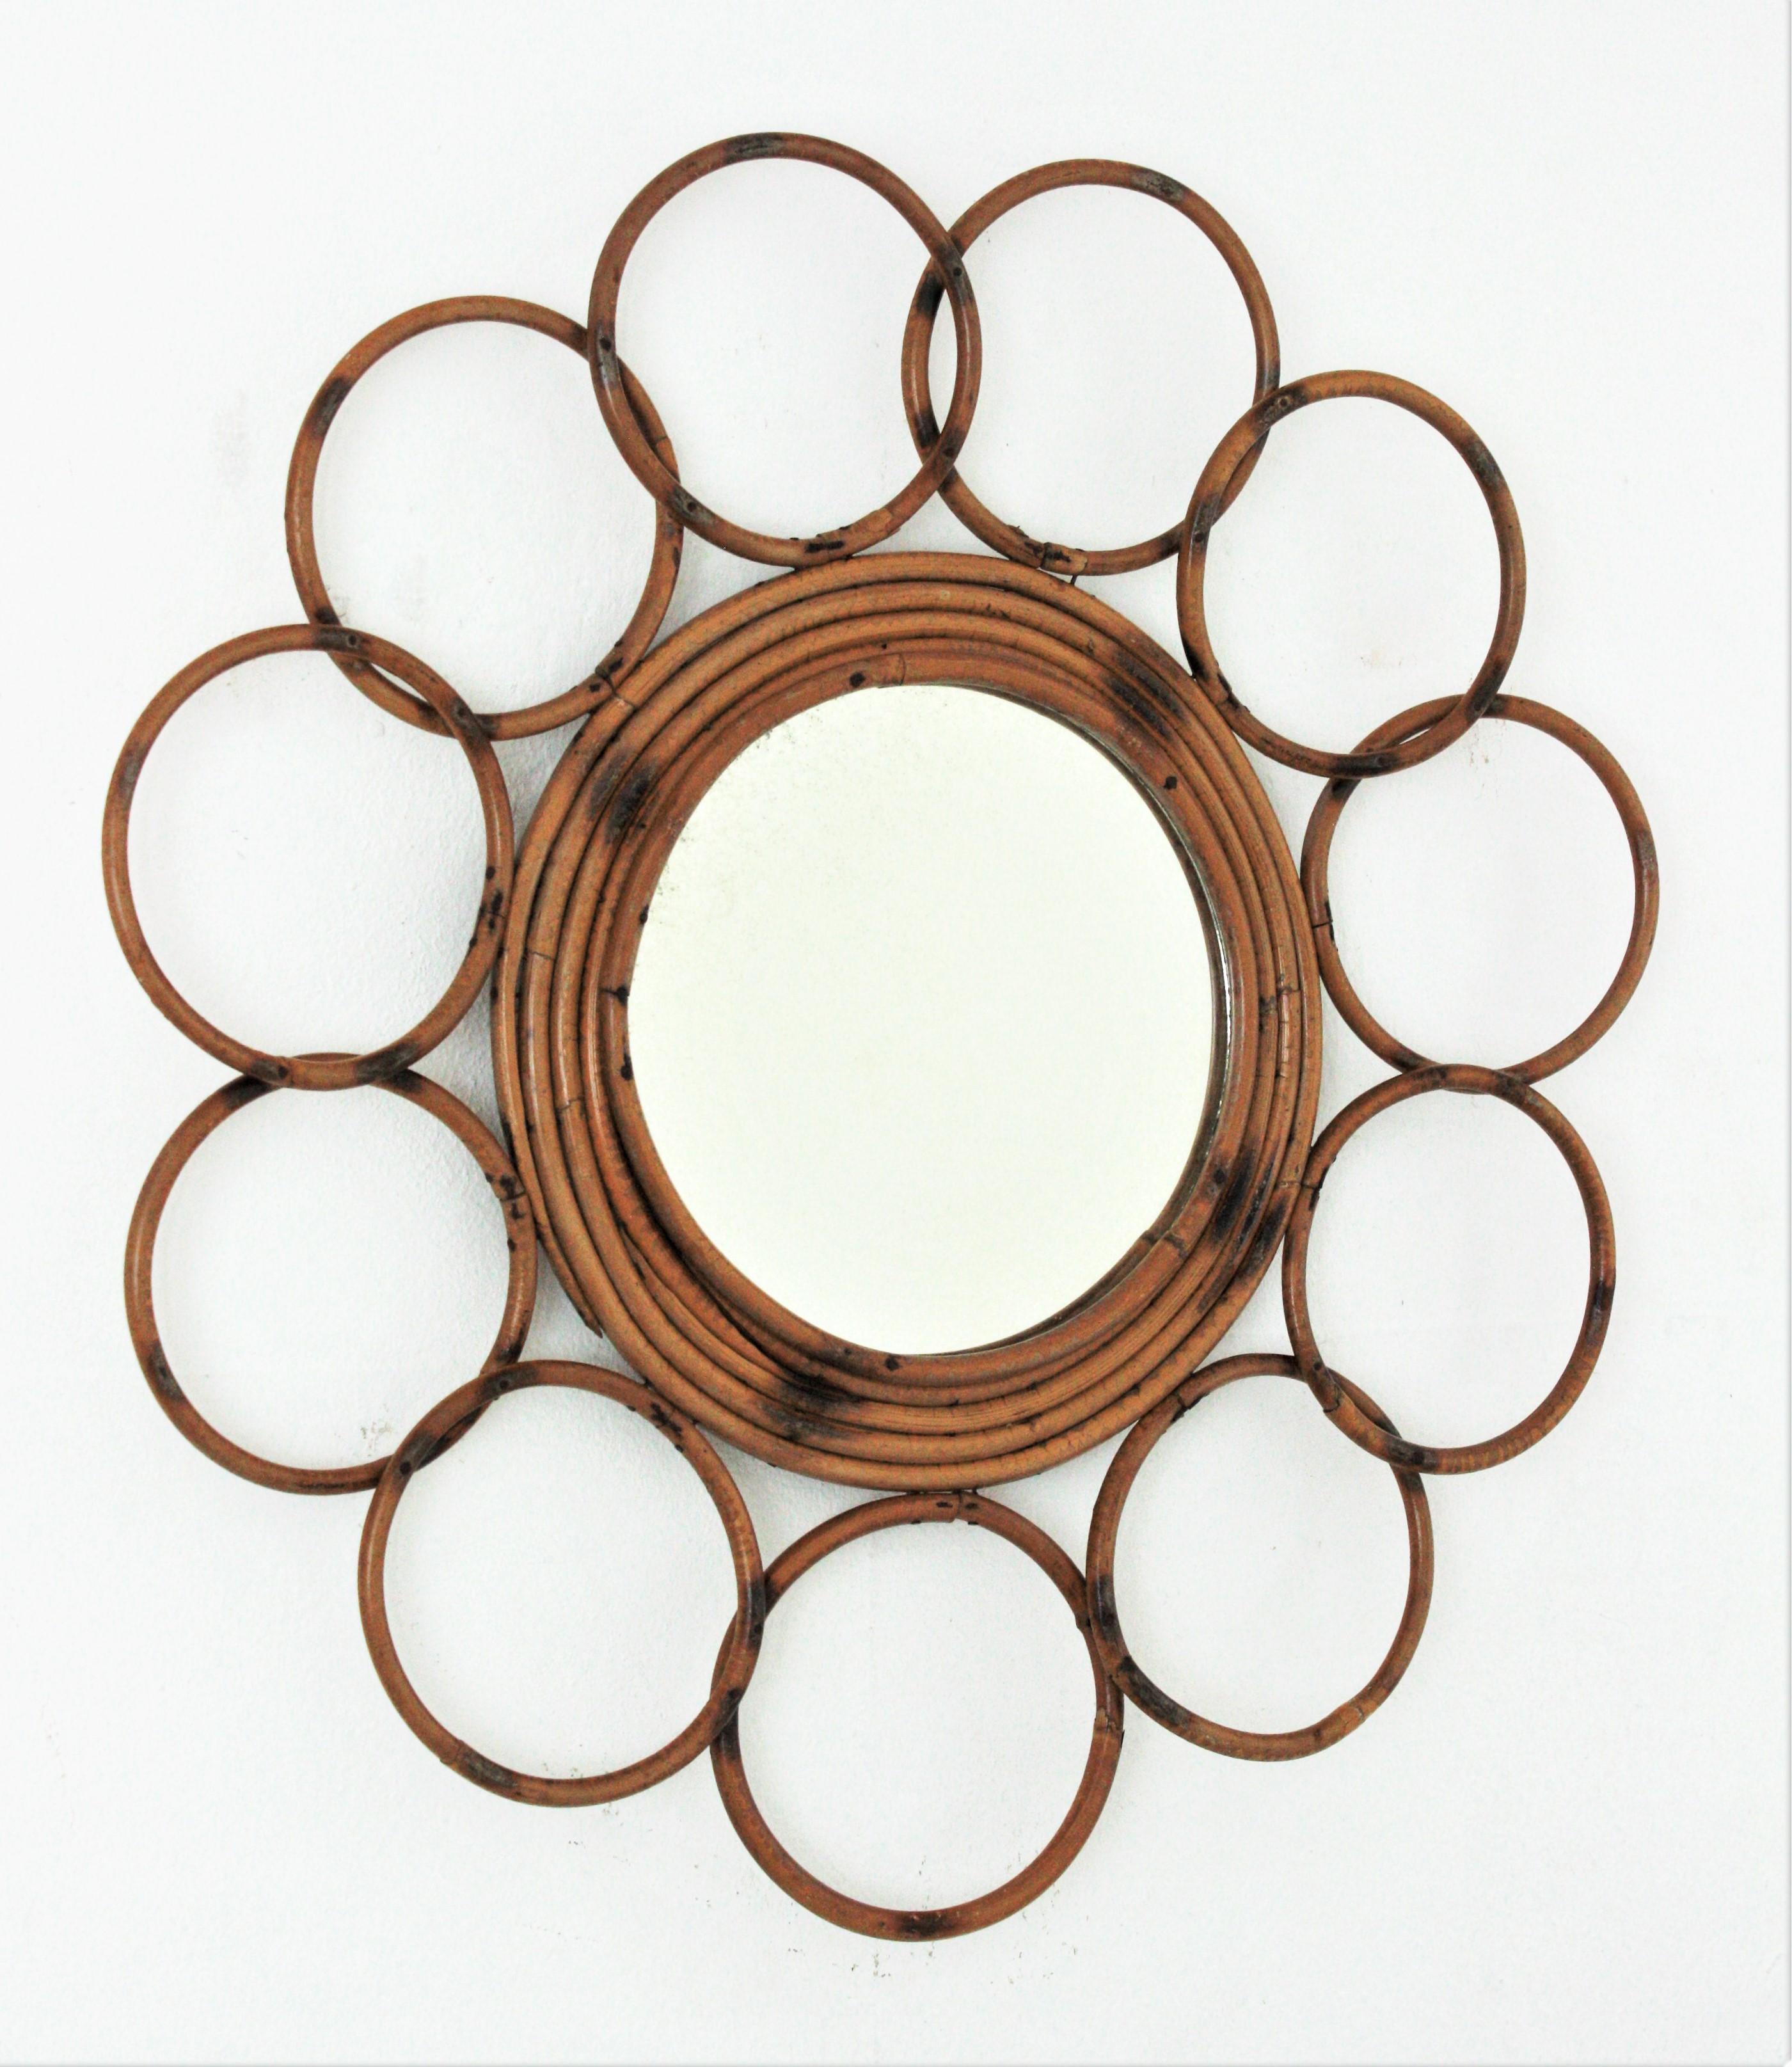 Rattan Runder Blumenspiegel, Frankreich, 1960er Jahre
Dieser handgefertigte Spiegel ist mit Kreisen umrahmt und hat Pyrographie-Verzierungen auf dem Rahmen.
Es ist in einem sehr guten Zustand und hat den ganzen Geschmack des mediterranen